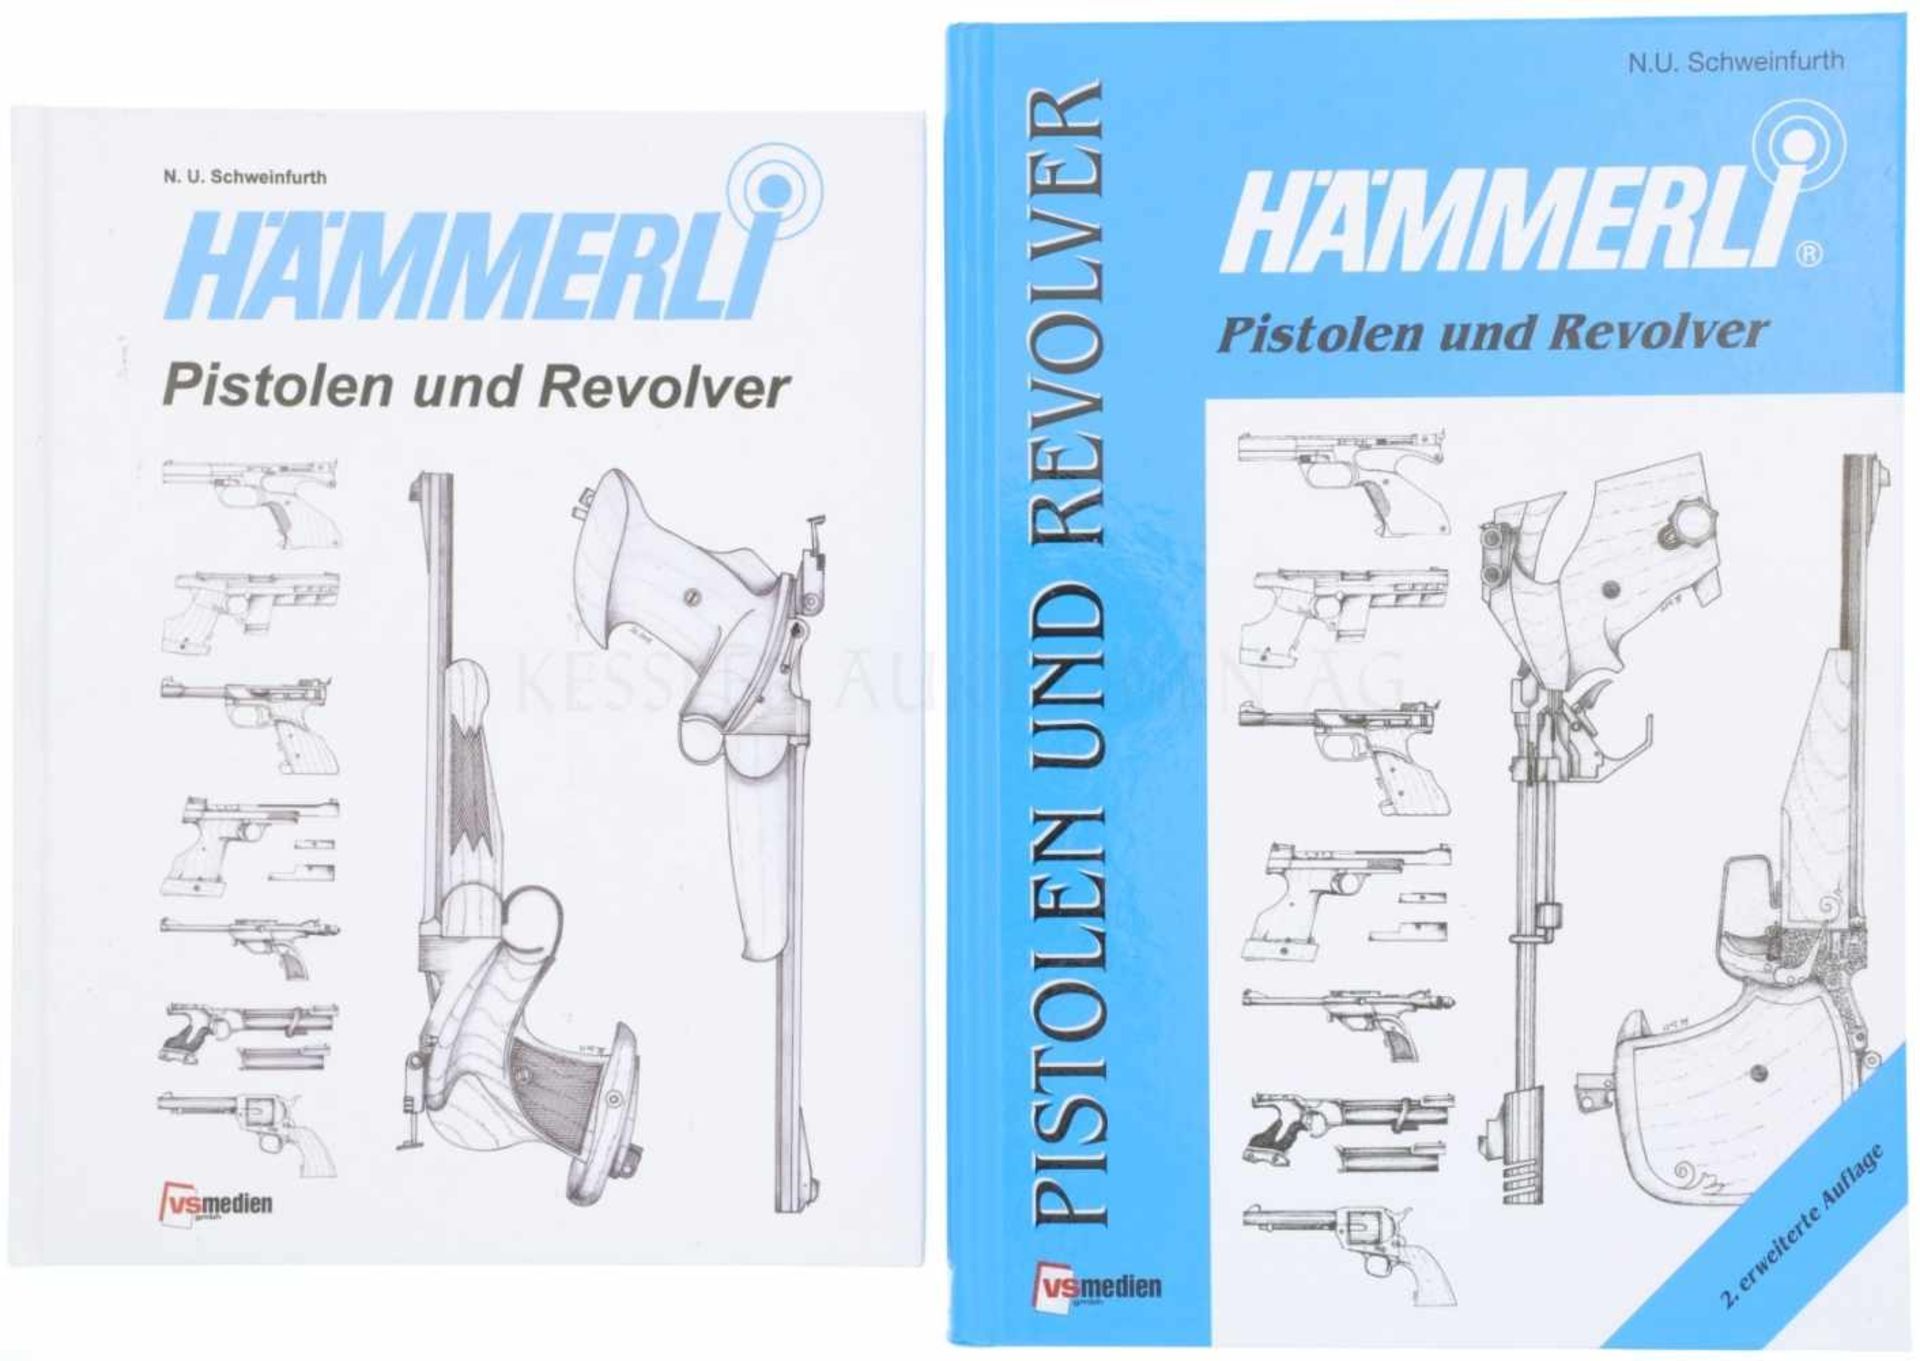 Konvolut von 2 Büchern "Hämmerli, Pistolen und Revolver" Autor N.U. Schweinfurth, VS Medien GmbH. 1.